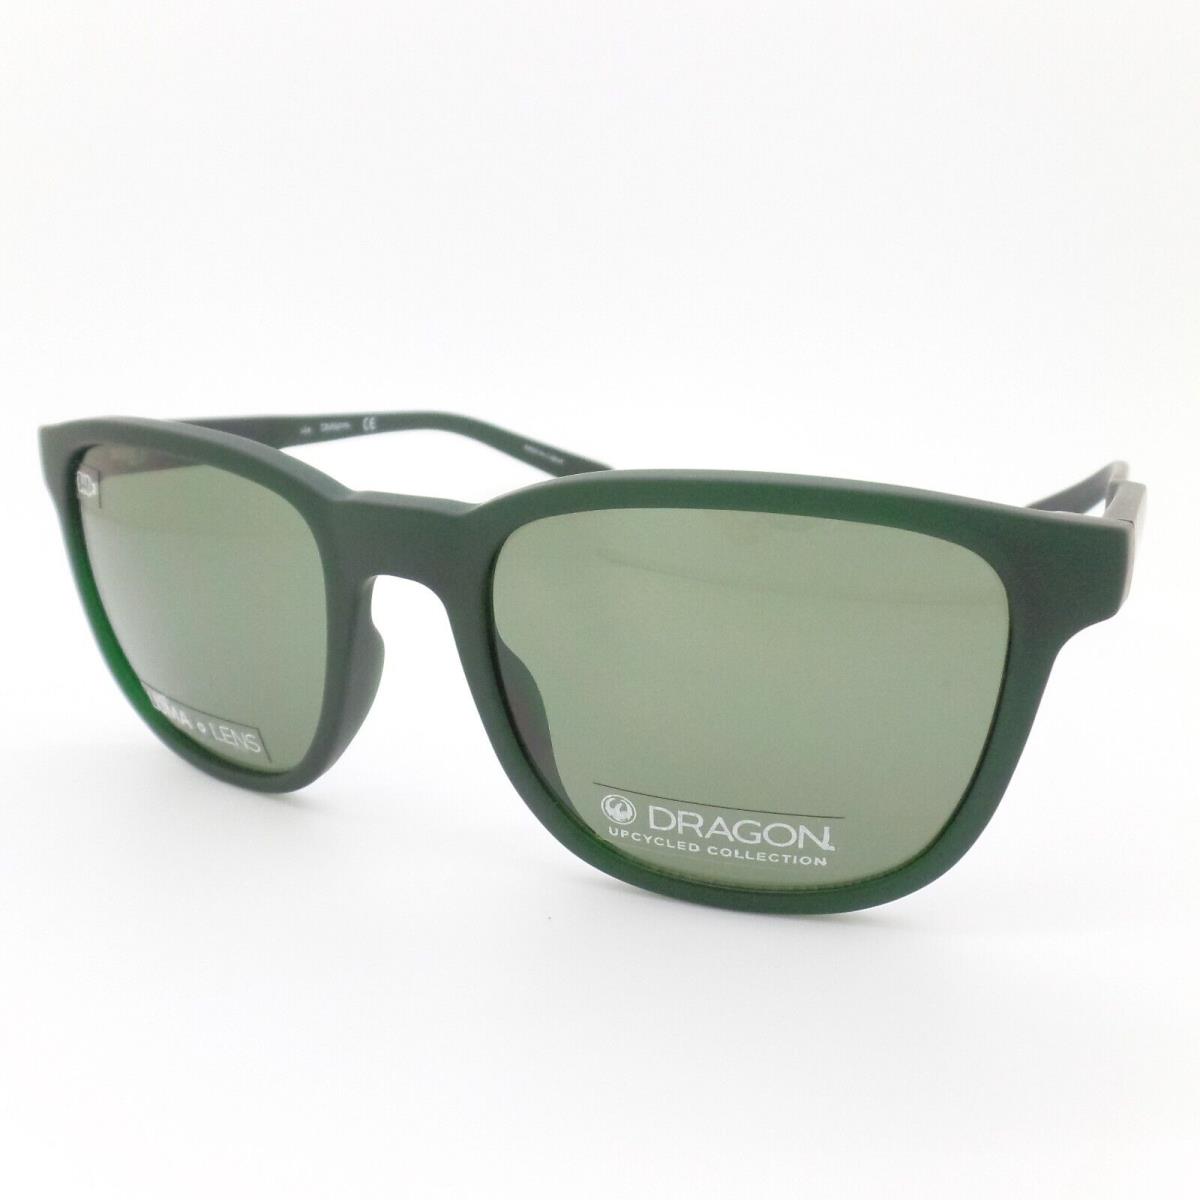 Dragon DR Clover LL Matte Olive 313 Green 53mm Sunglasses - Matte Olive Frame, Green Lens